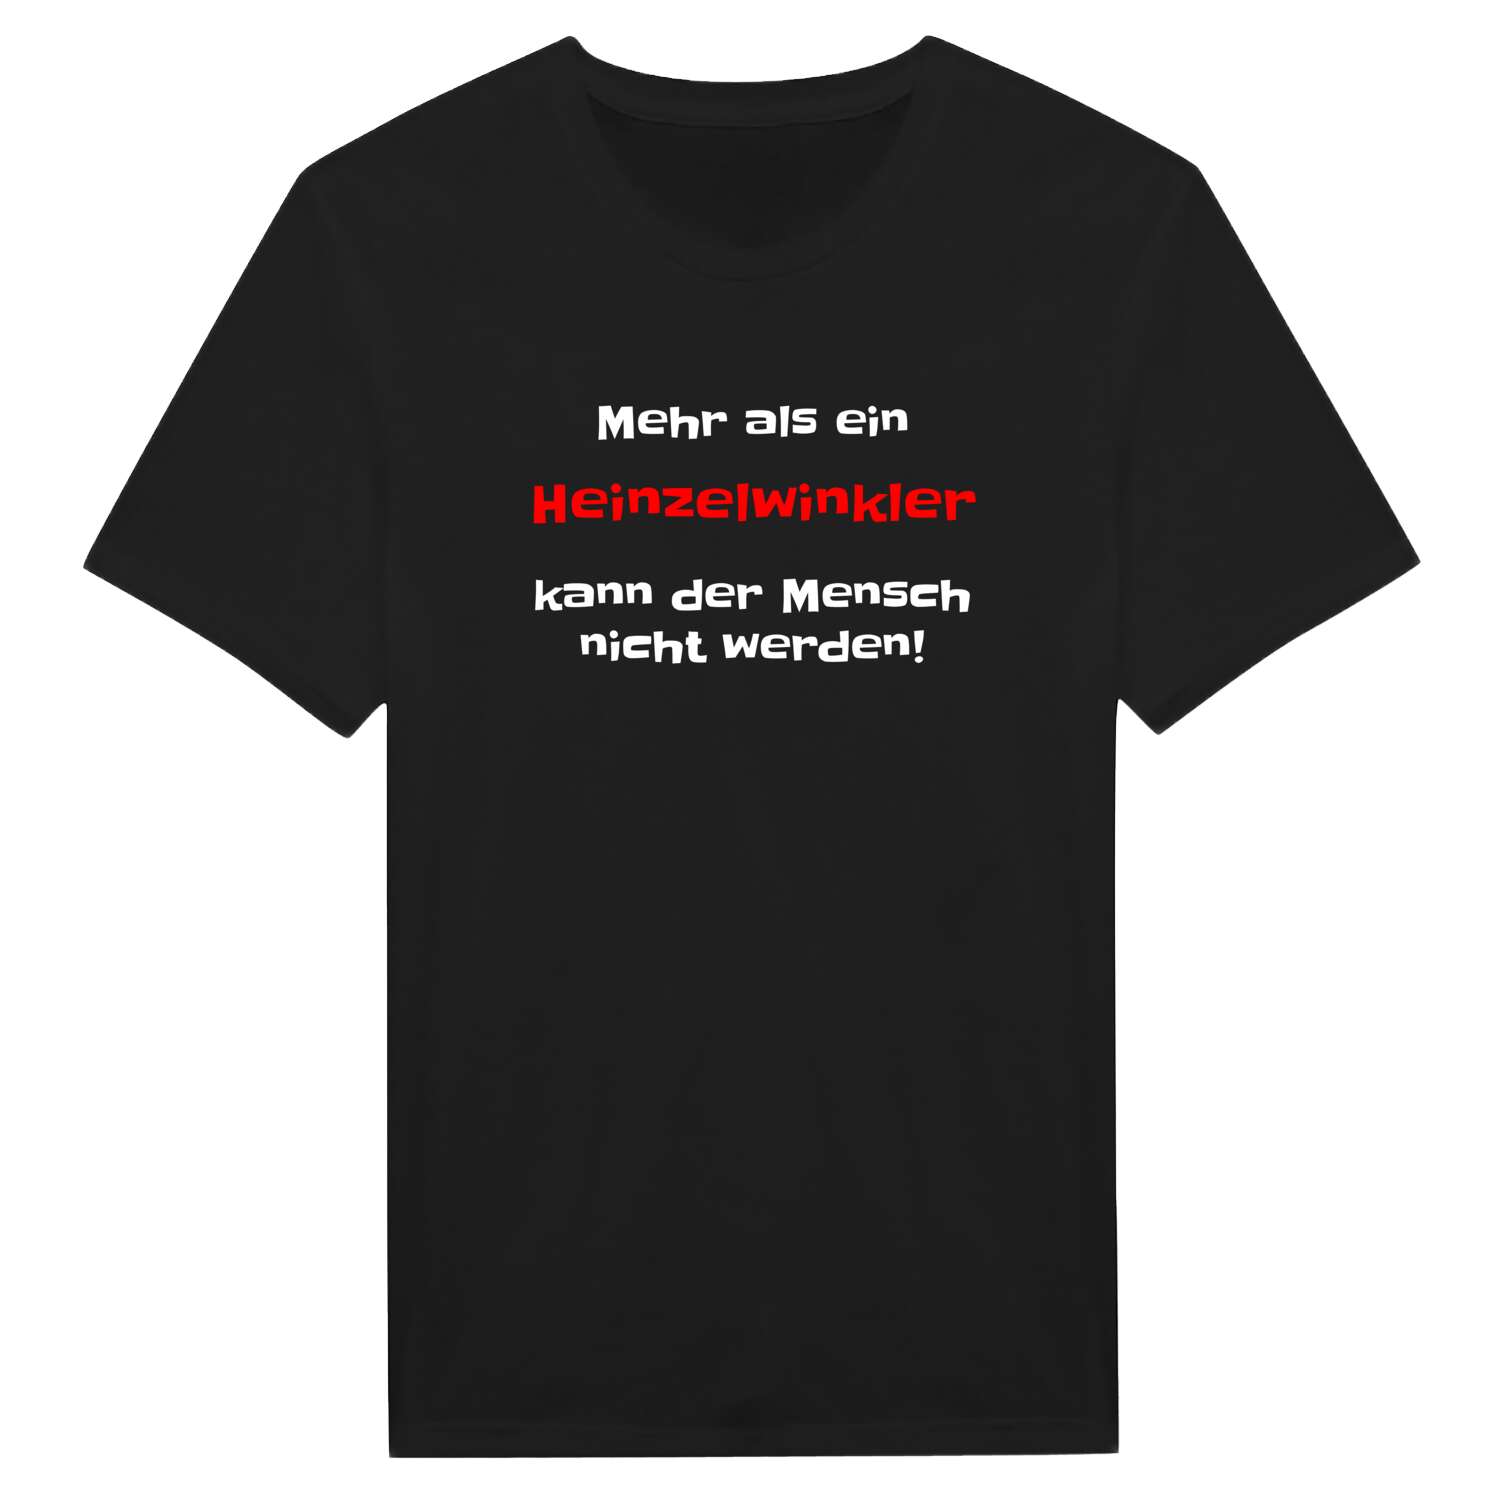 Heinzelwinkl T-Shirt »Mehr als ein«